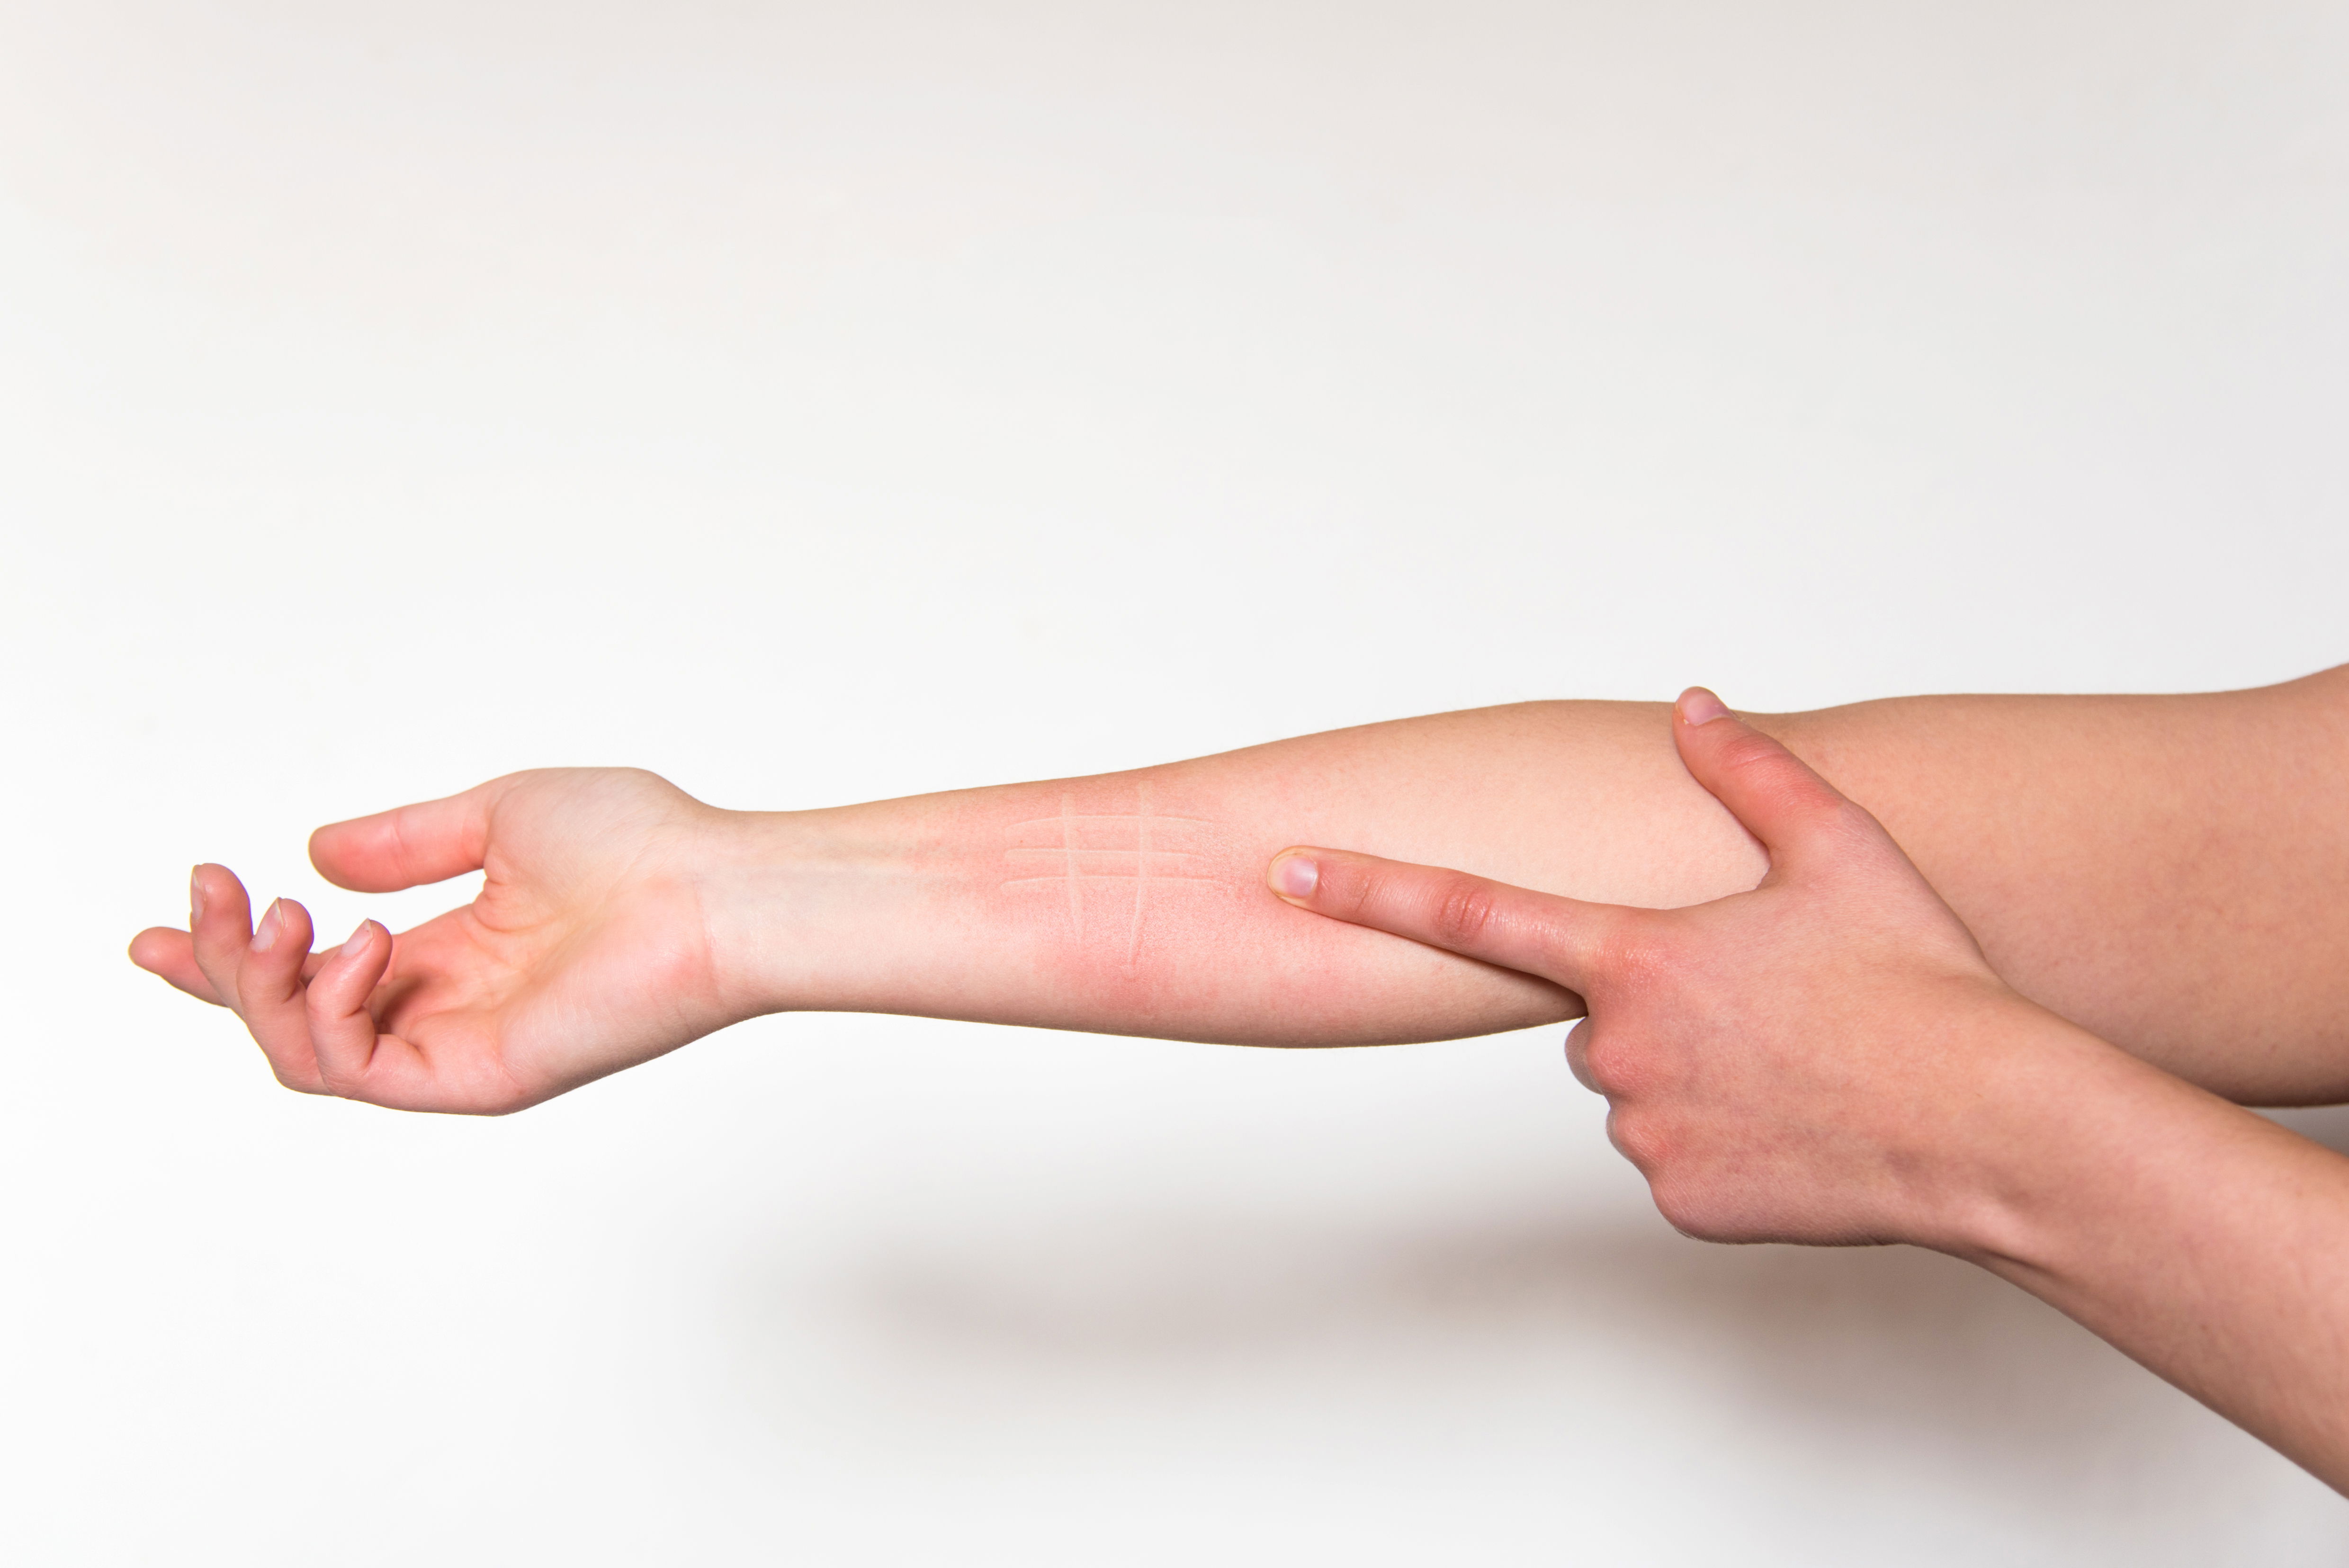 Foto eines Unterarms, der die Symptome eines weißen Dermographismus zeigt. Dabei hinterlässt das Streichen über die Haut weiße Linien, was ein Symptom für eine Atopie ist..